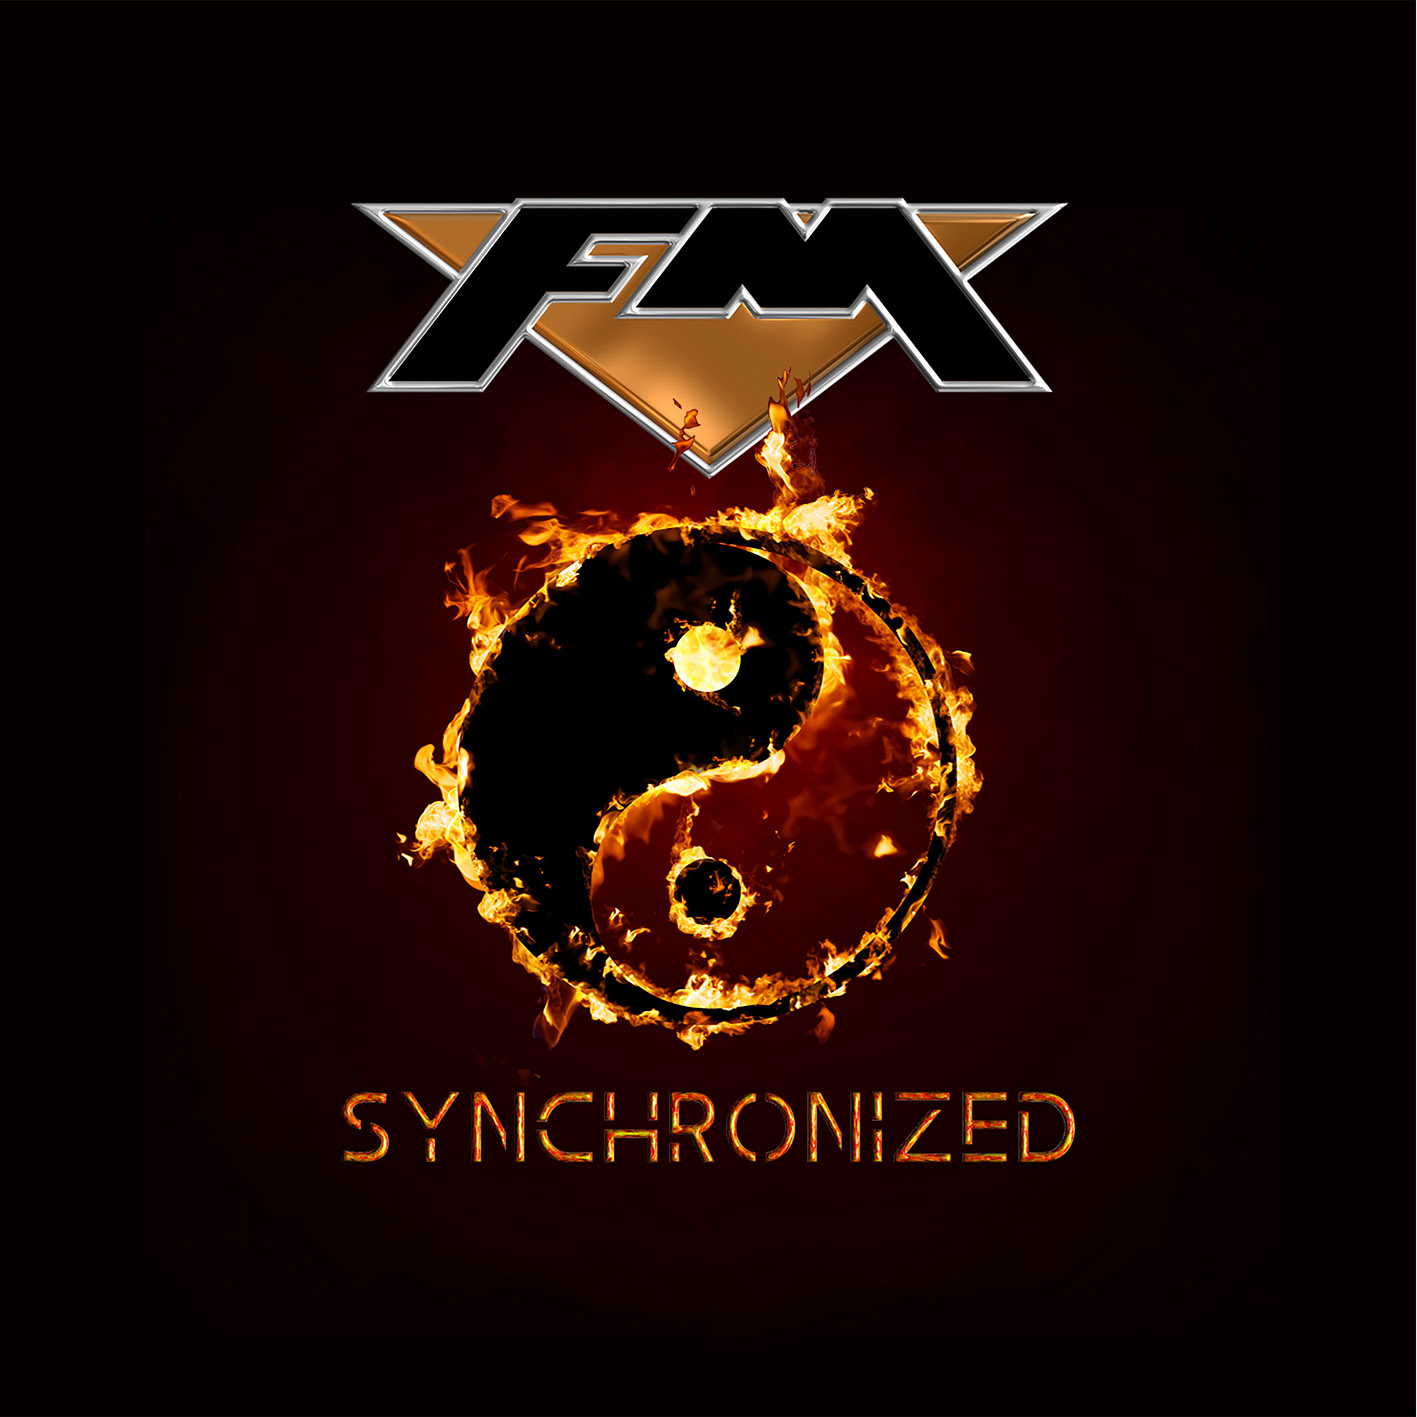 FM - “Synchronized”